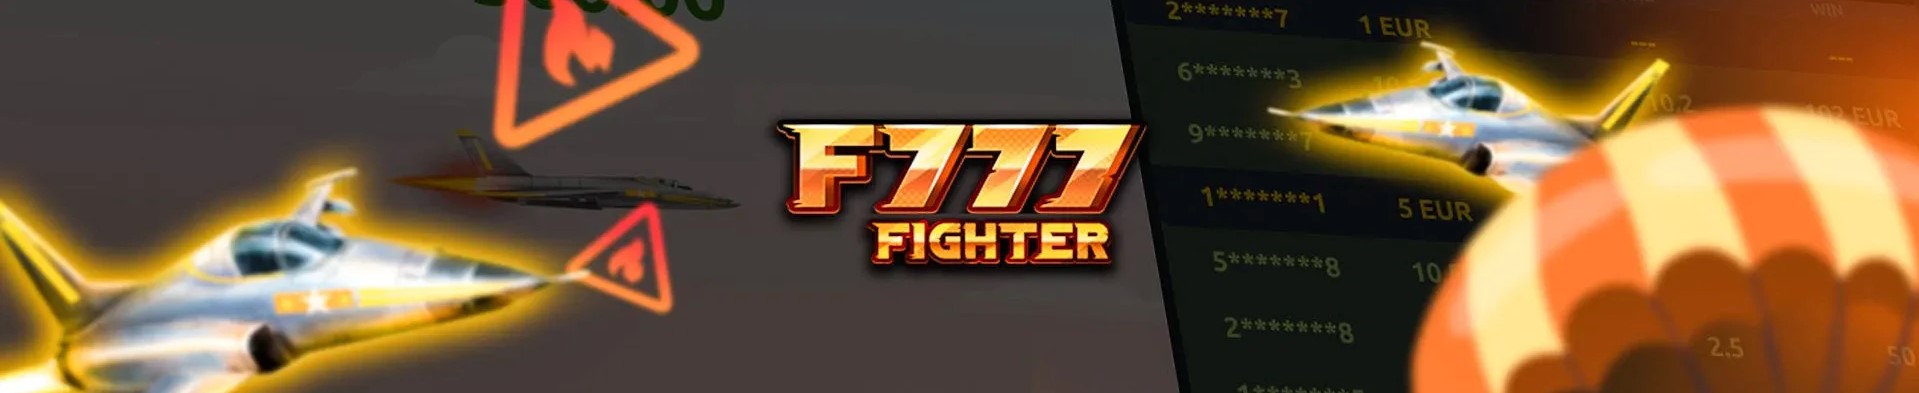 Παιχνίδι F777 fighter.